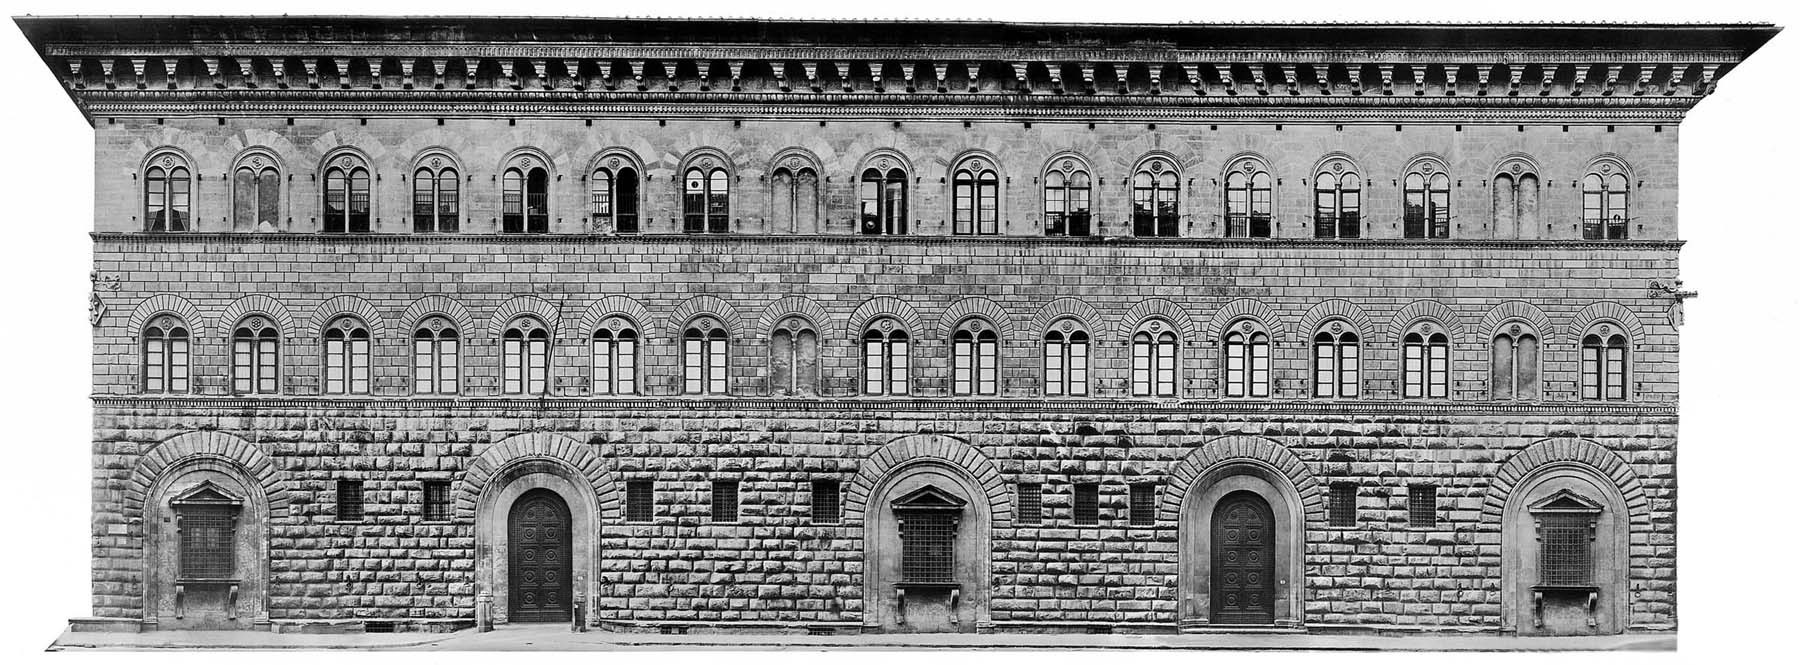 La facciata di Palazzo Medici Riccardi